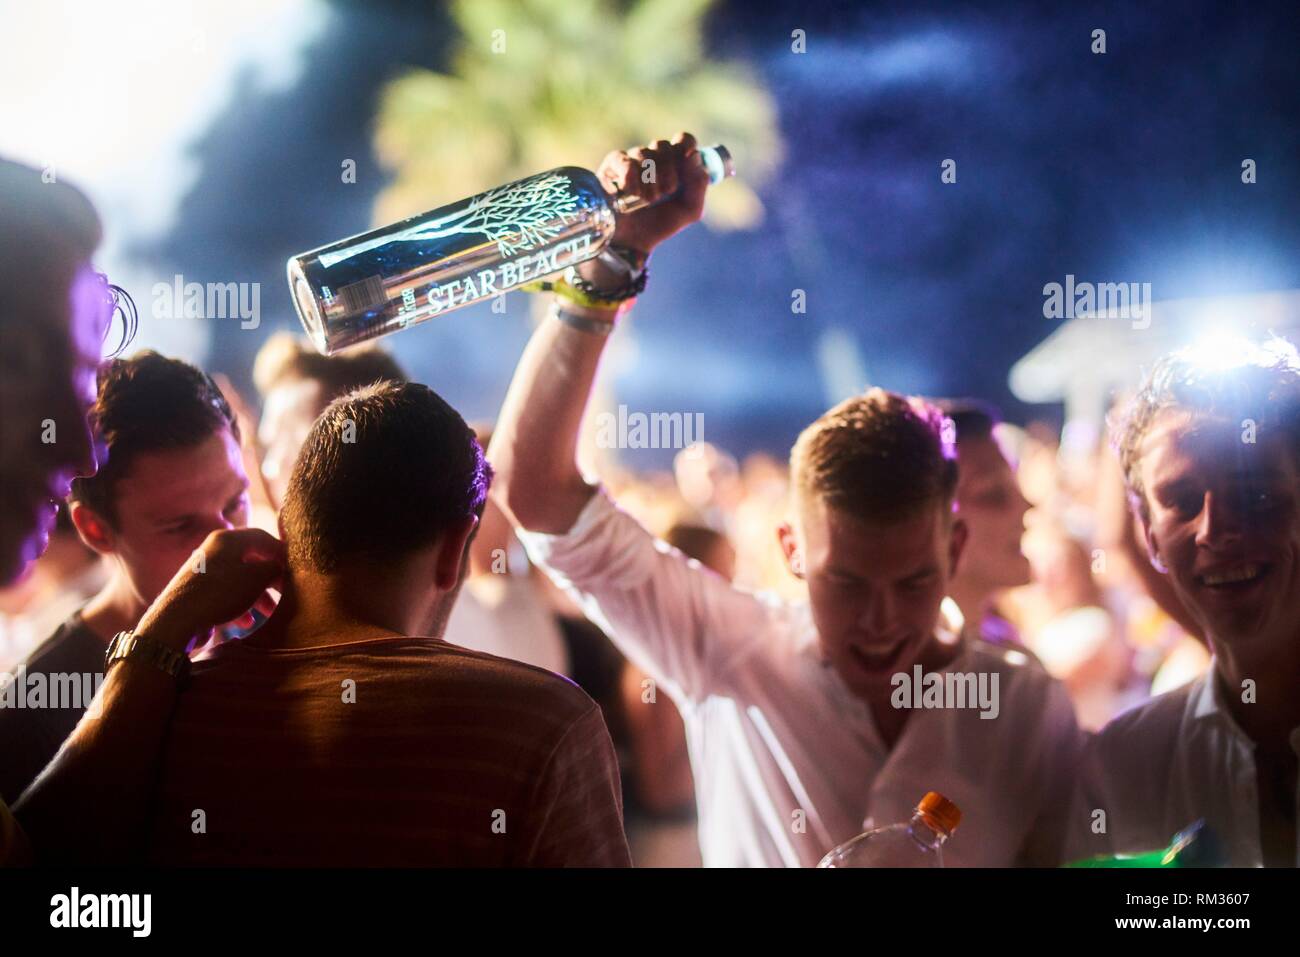 Party People holding bouteille de vodka Belvedere au festival de musique  Starbeach Chersonissos, Crète, Grèce, à 06. Août 2018 Photo Stock - Alamy